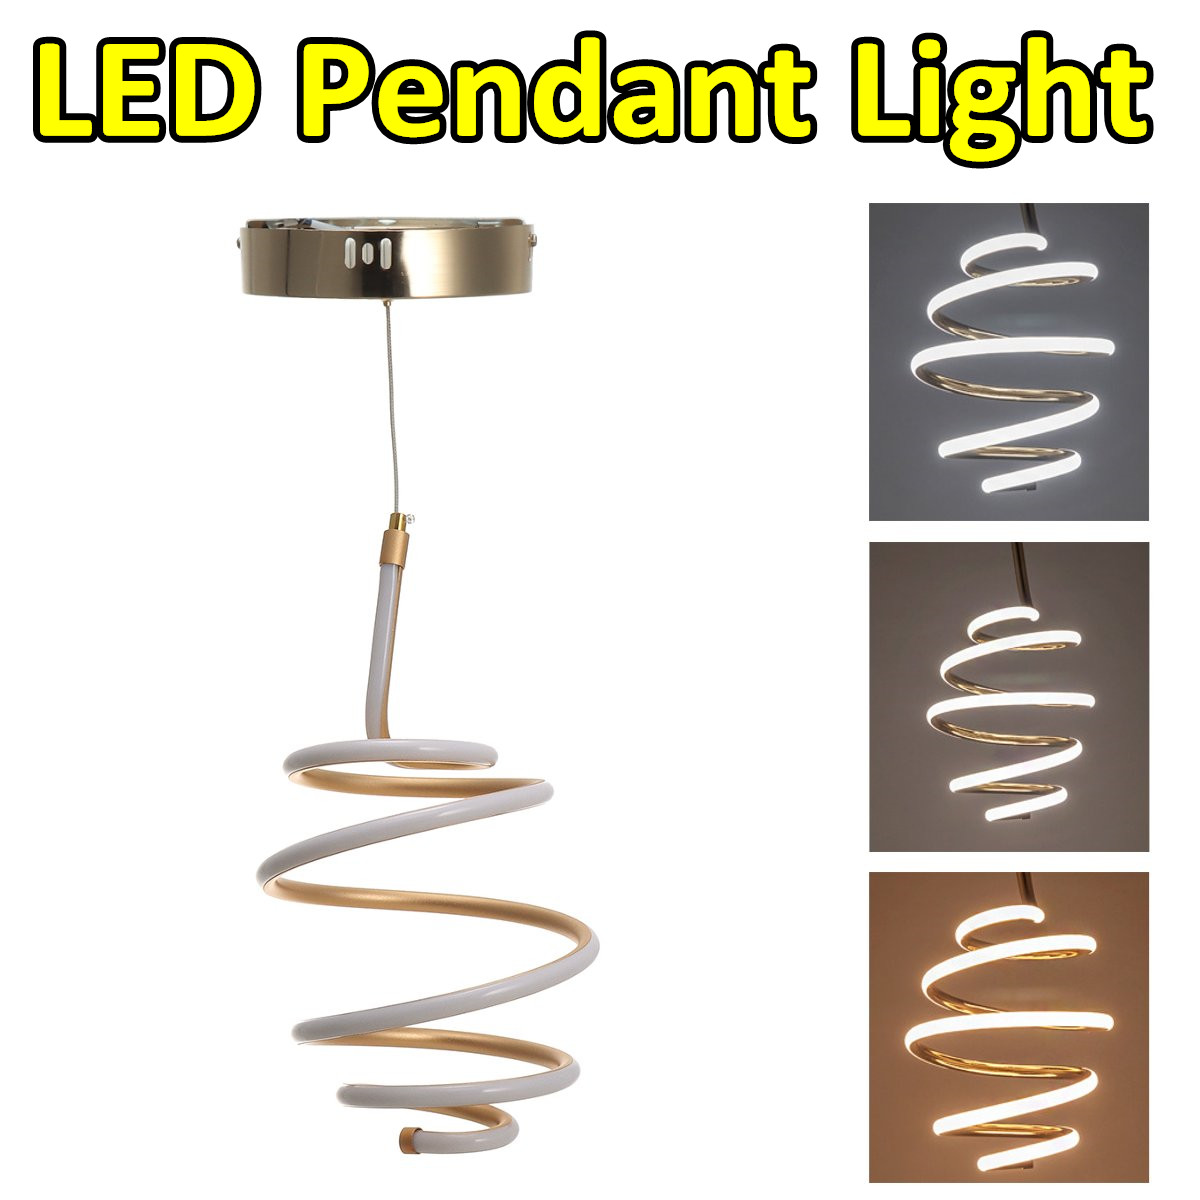 Remote-Control-LED-Pendant-Lights-Lamp-Modern-Chandelier-Home-Bedroom-Lighting-1675000-1